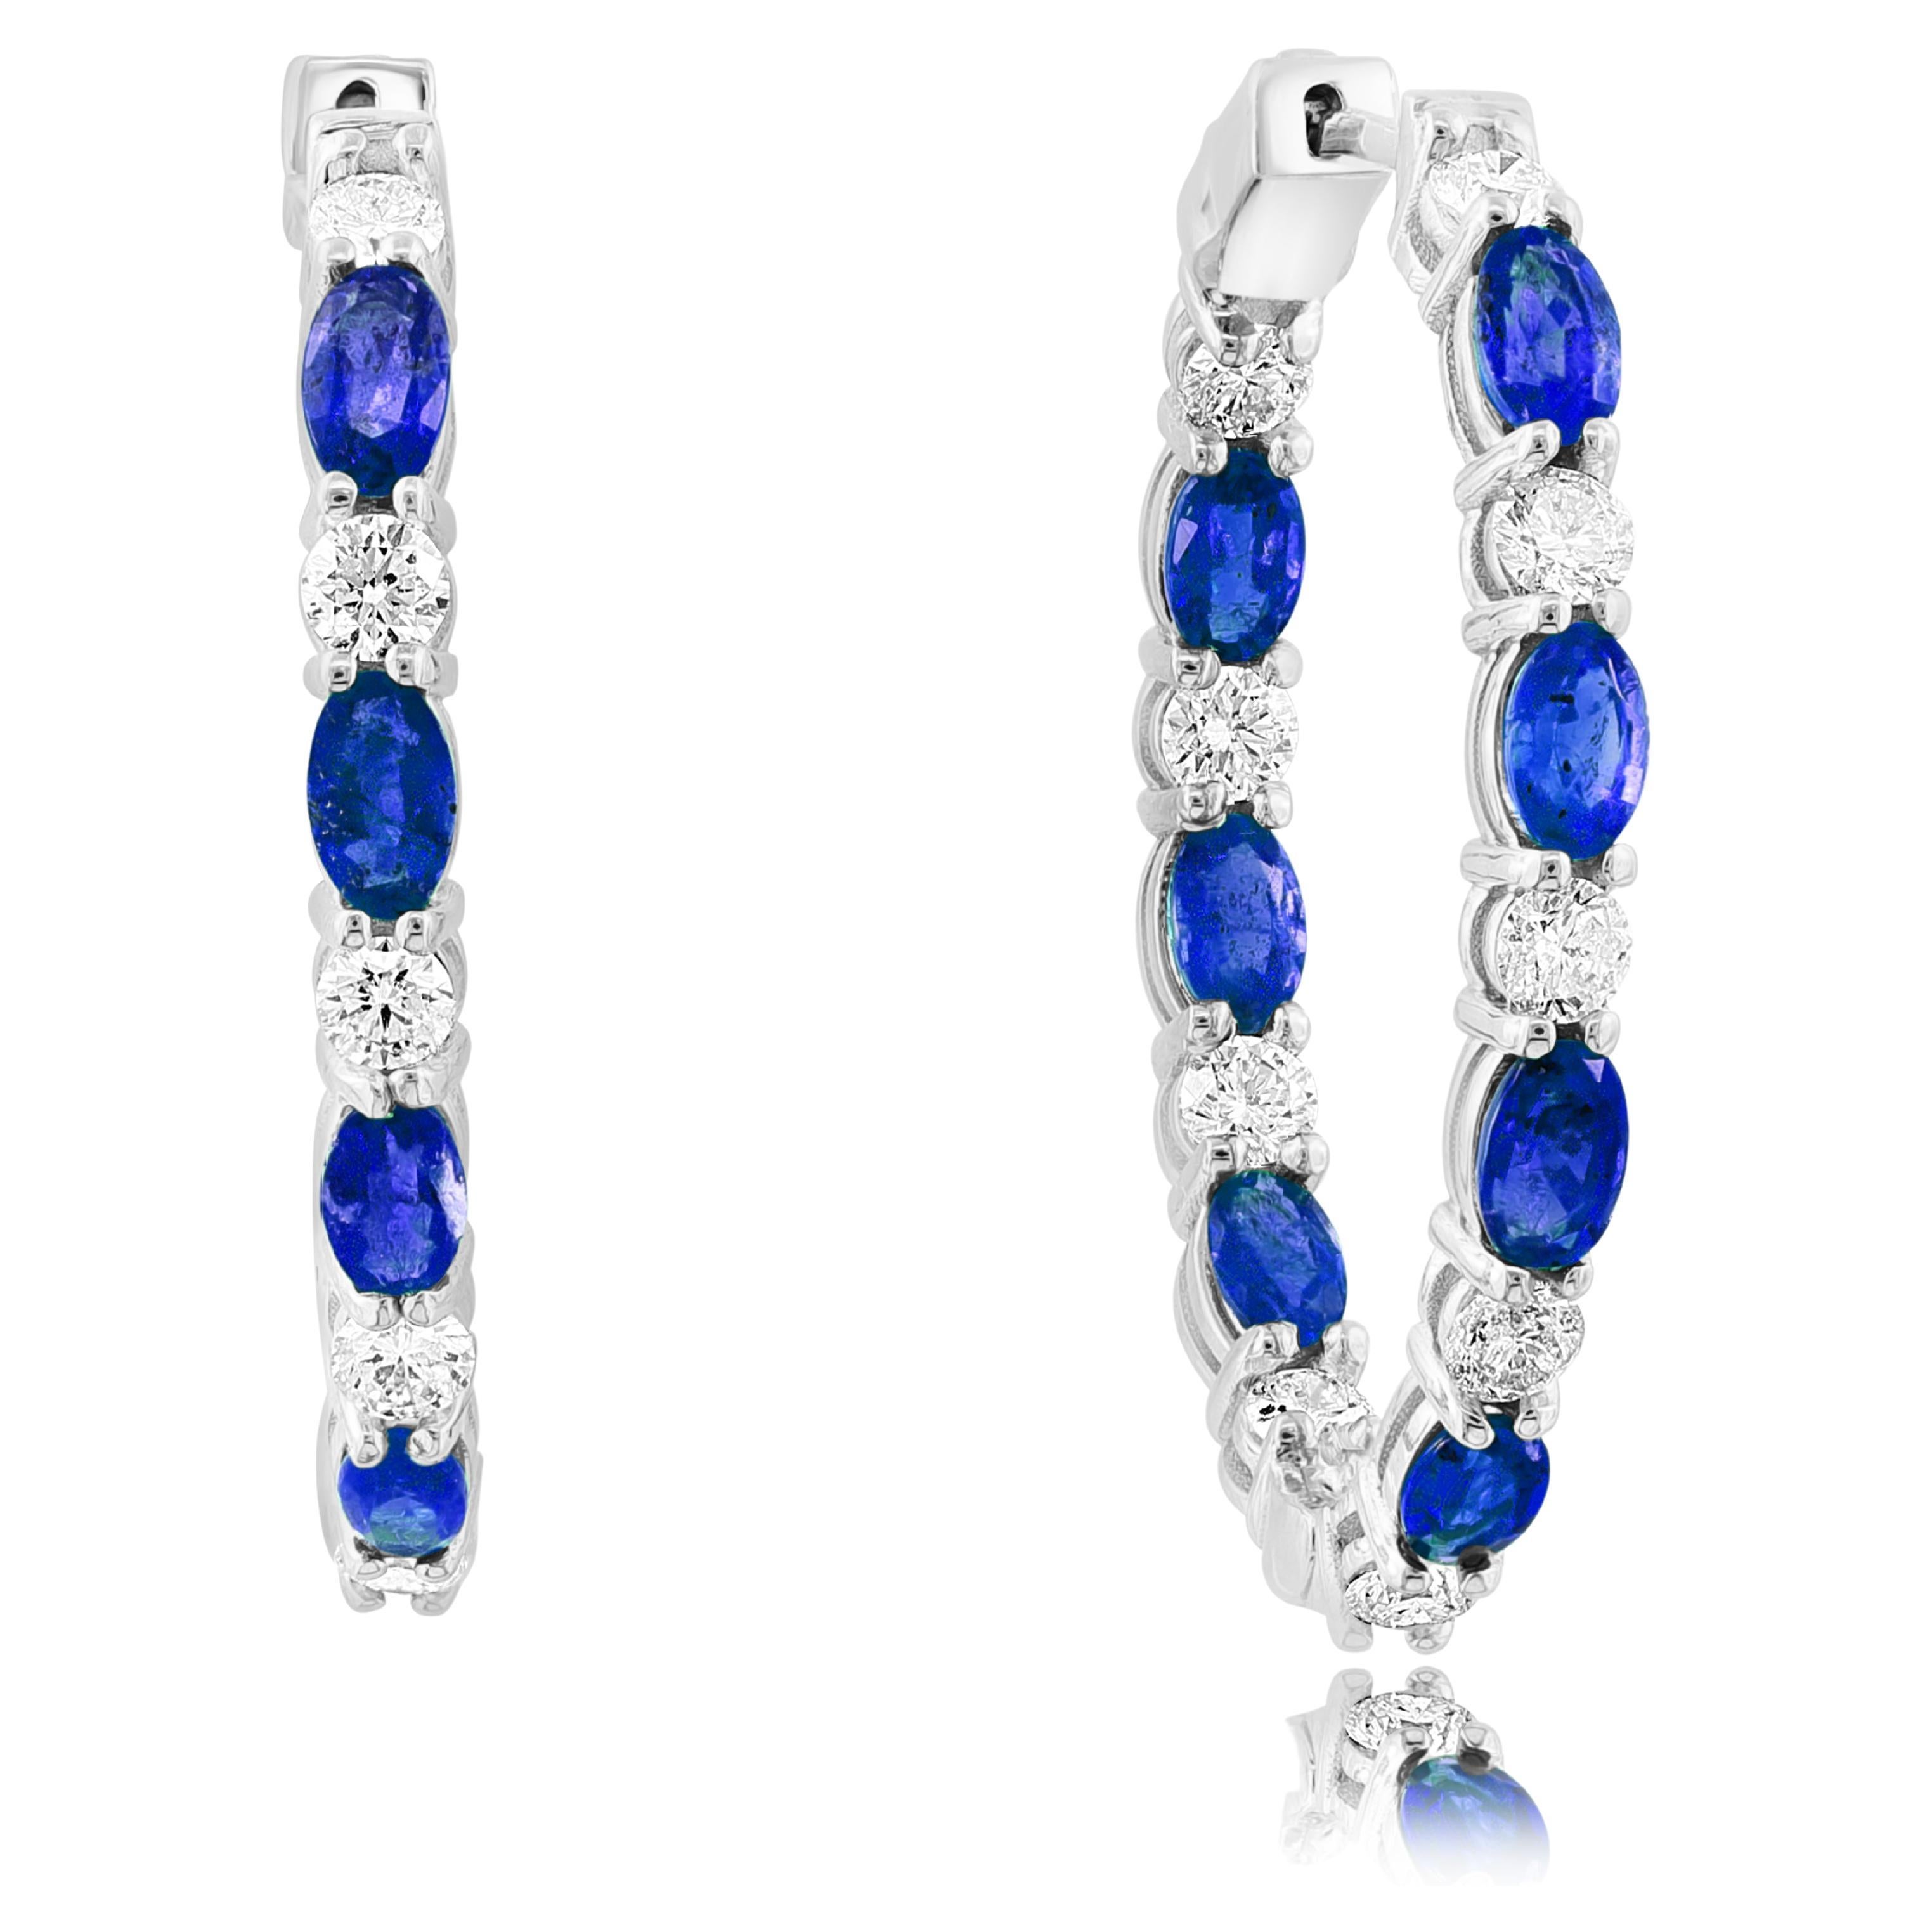 4.13 Carat Oval Cut Blue Sapphire Diamond Hoop Earrings in 14K White Gold For Sale